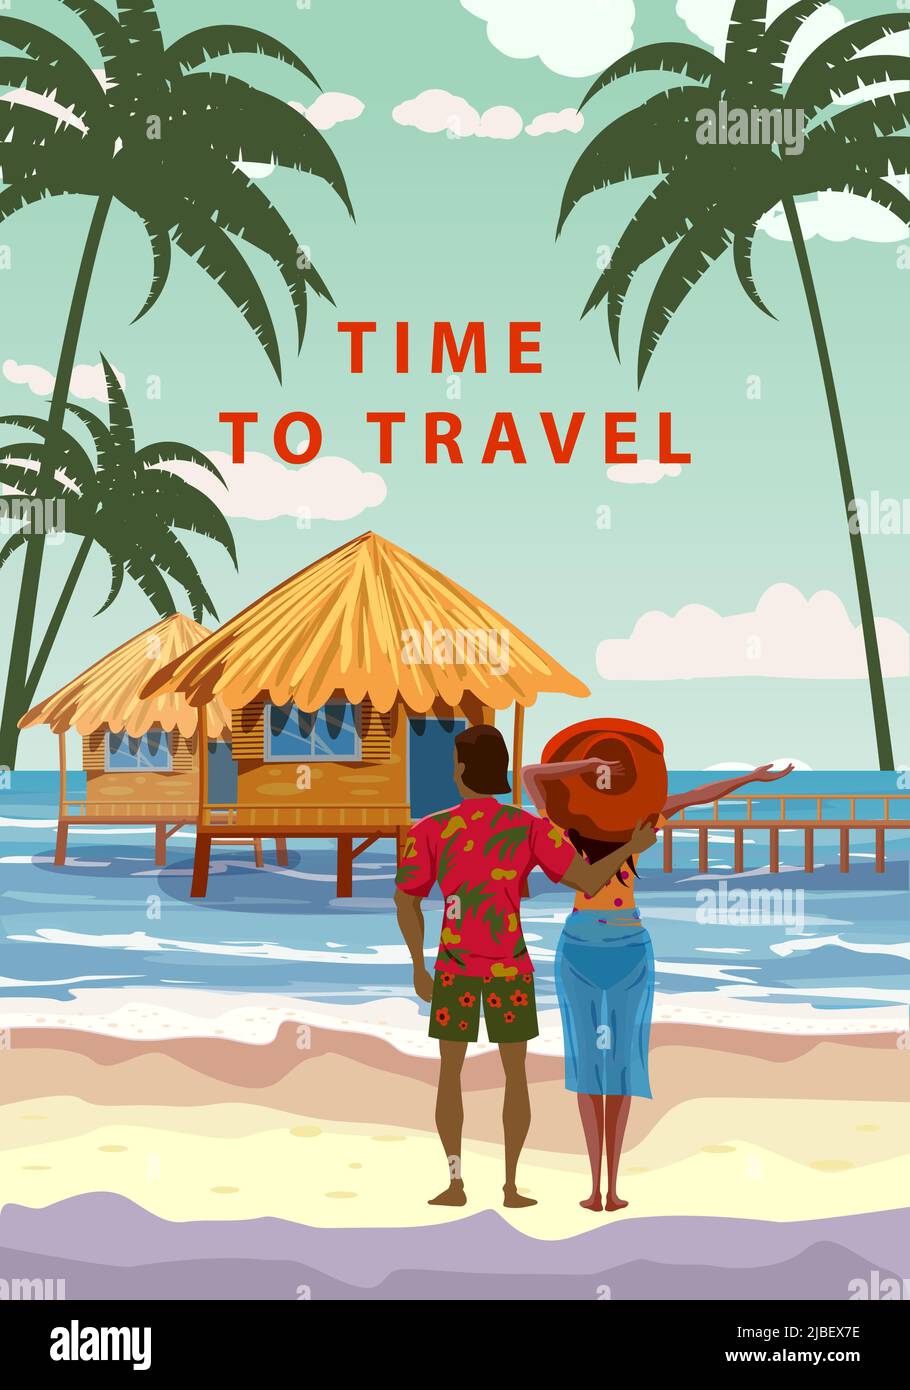 Tempo di viaggiare. Donna e uomo in resort tropicale, poster vintage. Spiaggia costa capanne tradizionali, palme, oceano. Vettore di illustrazione stile retrò Illustrazione Vettoriale